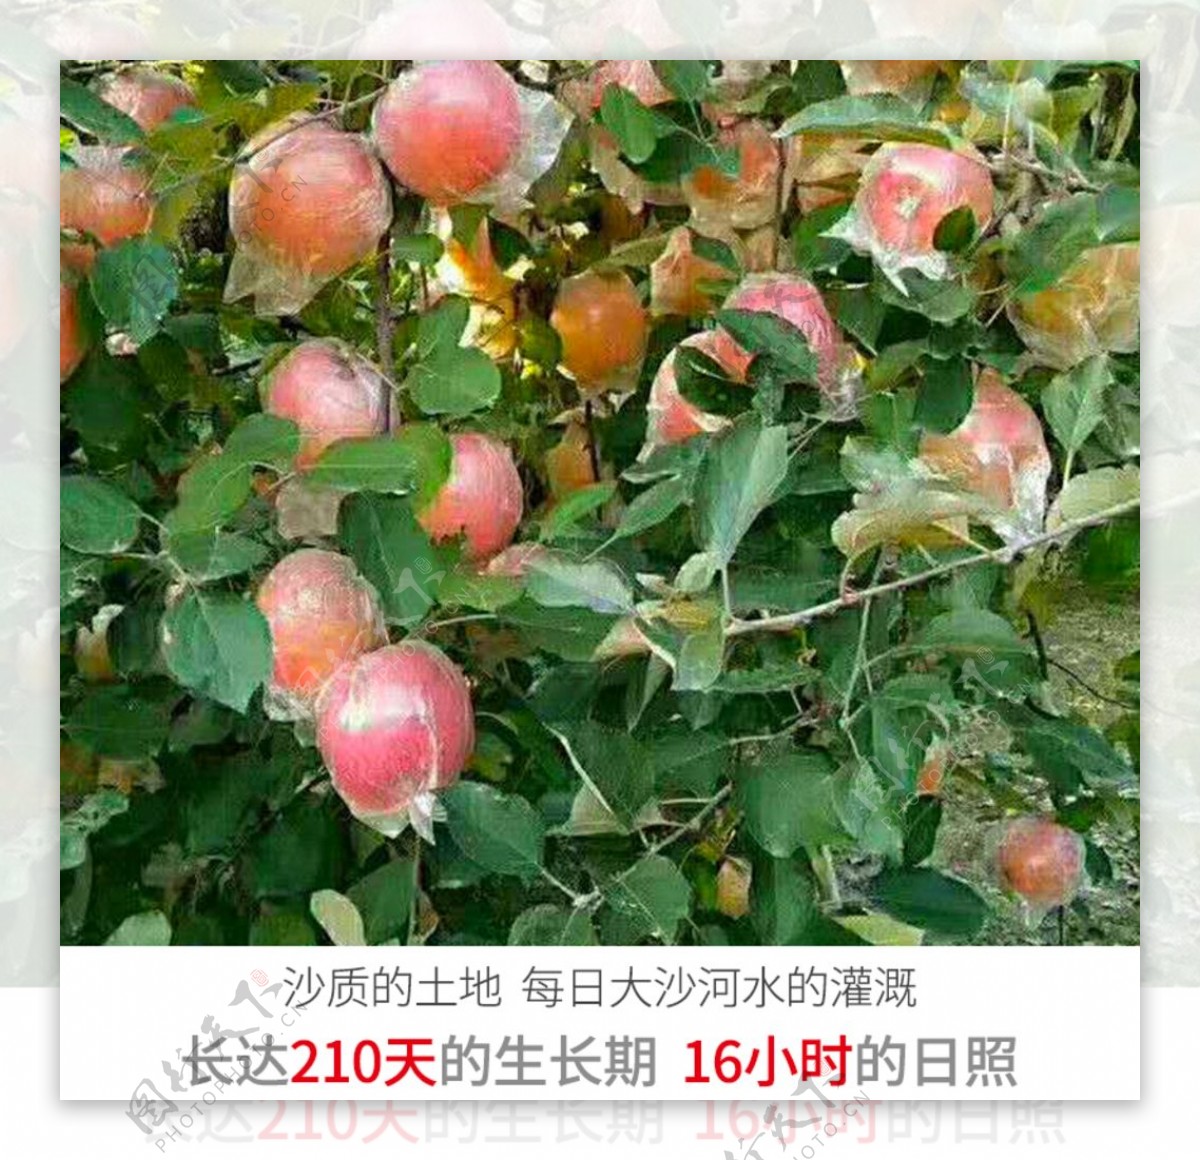 丰县丑苹果大沙河丑苹